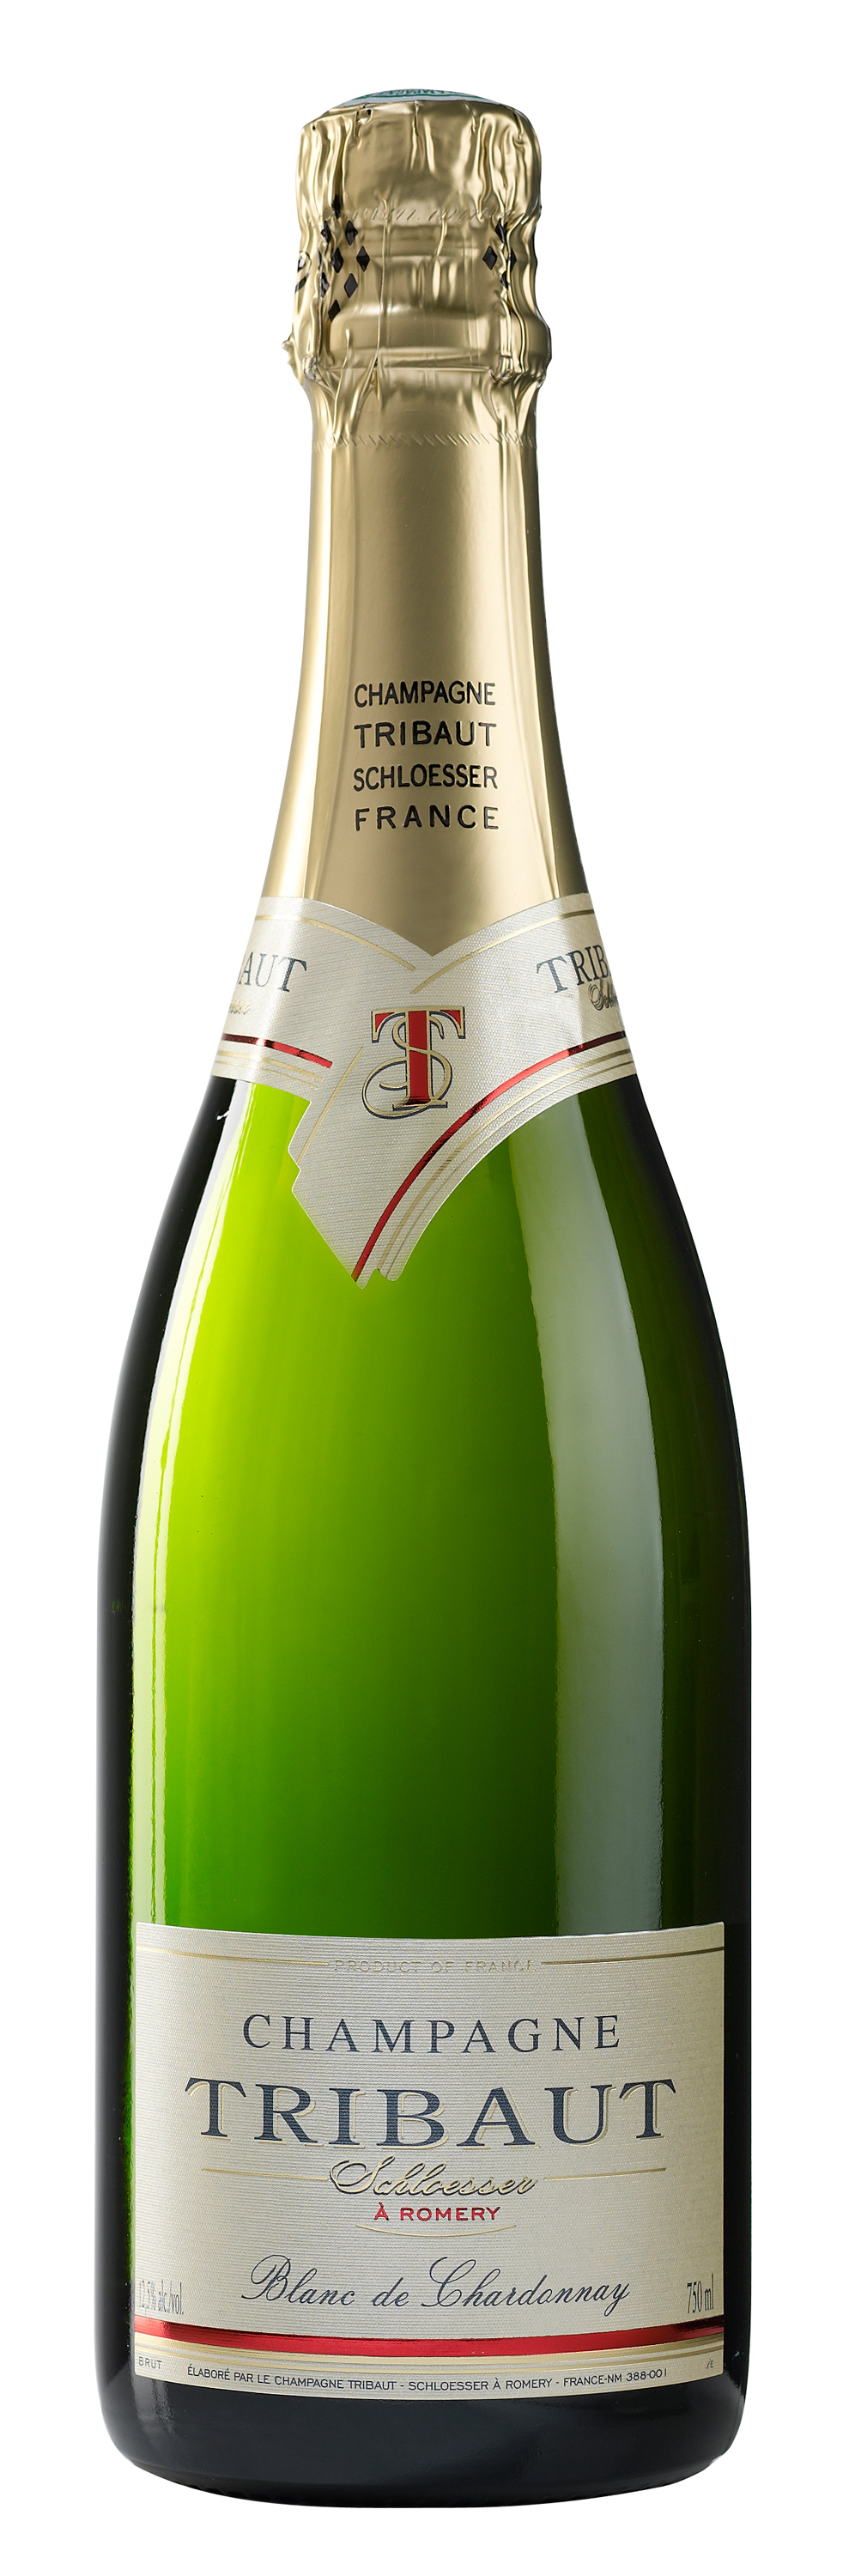 MV Champagne Tribaut Le Blanc de Chardonnay Extra Brut - click image for full description